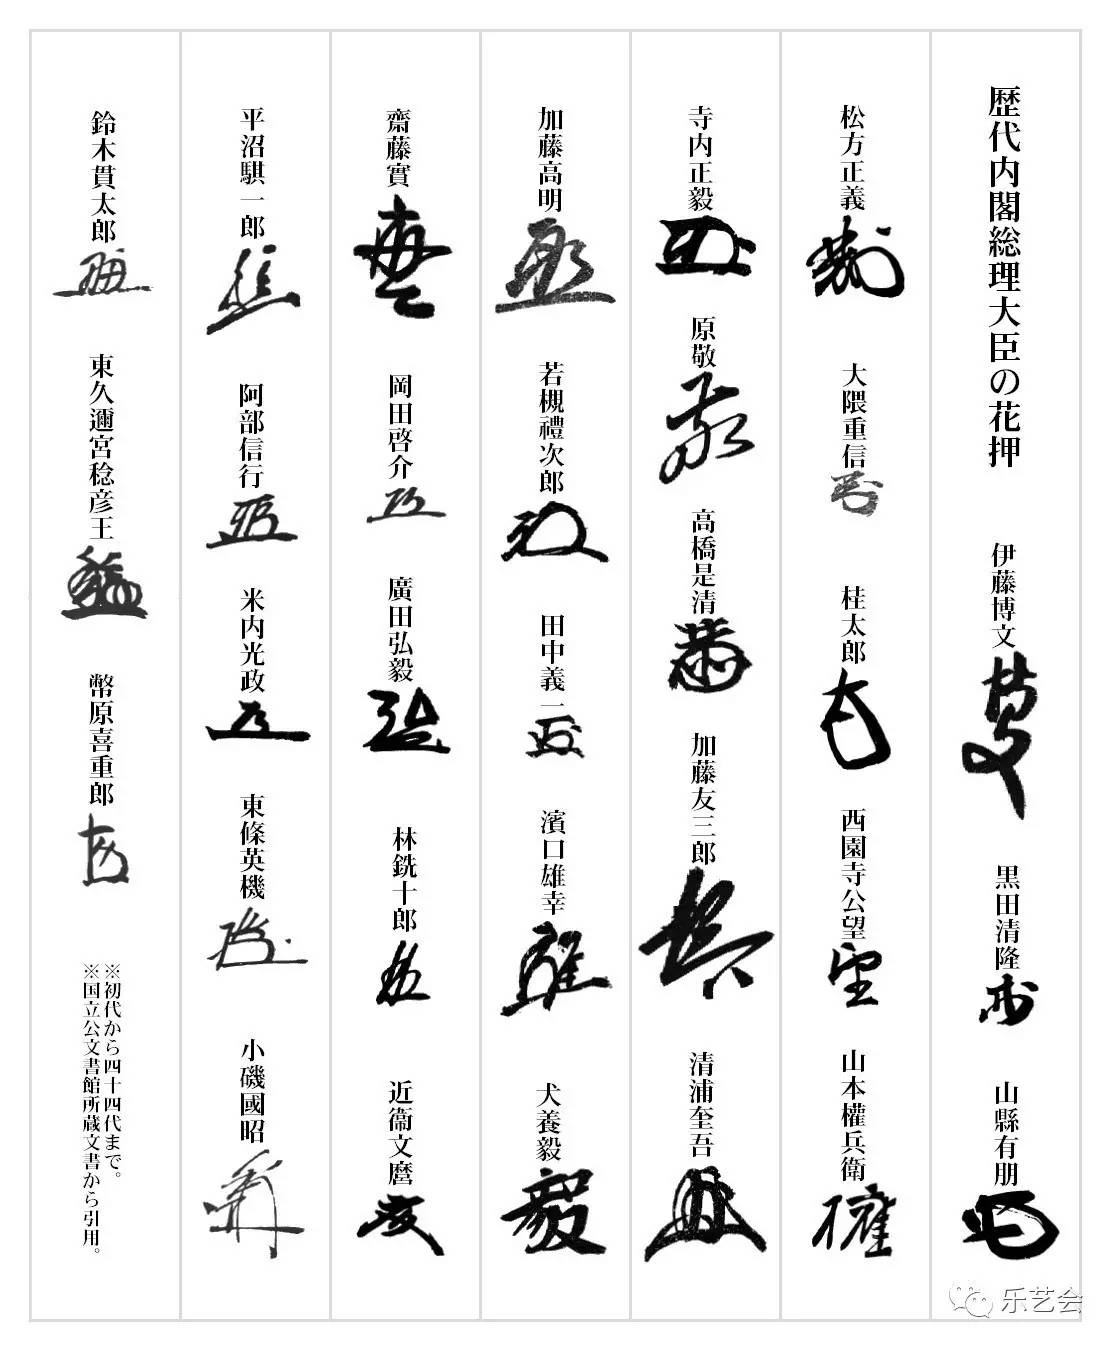 日本历代内阁总理大臣的花押签署 "押"者,署也,本为动词,是指在文字